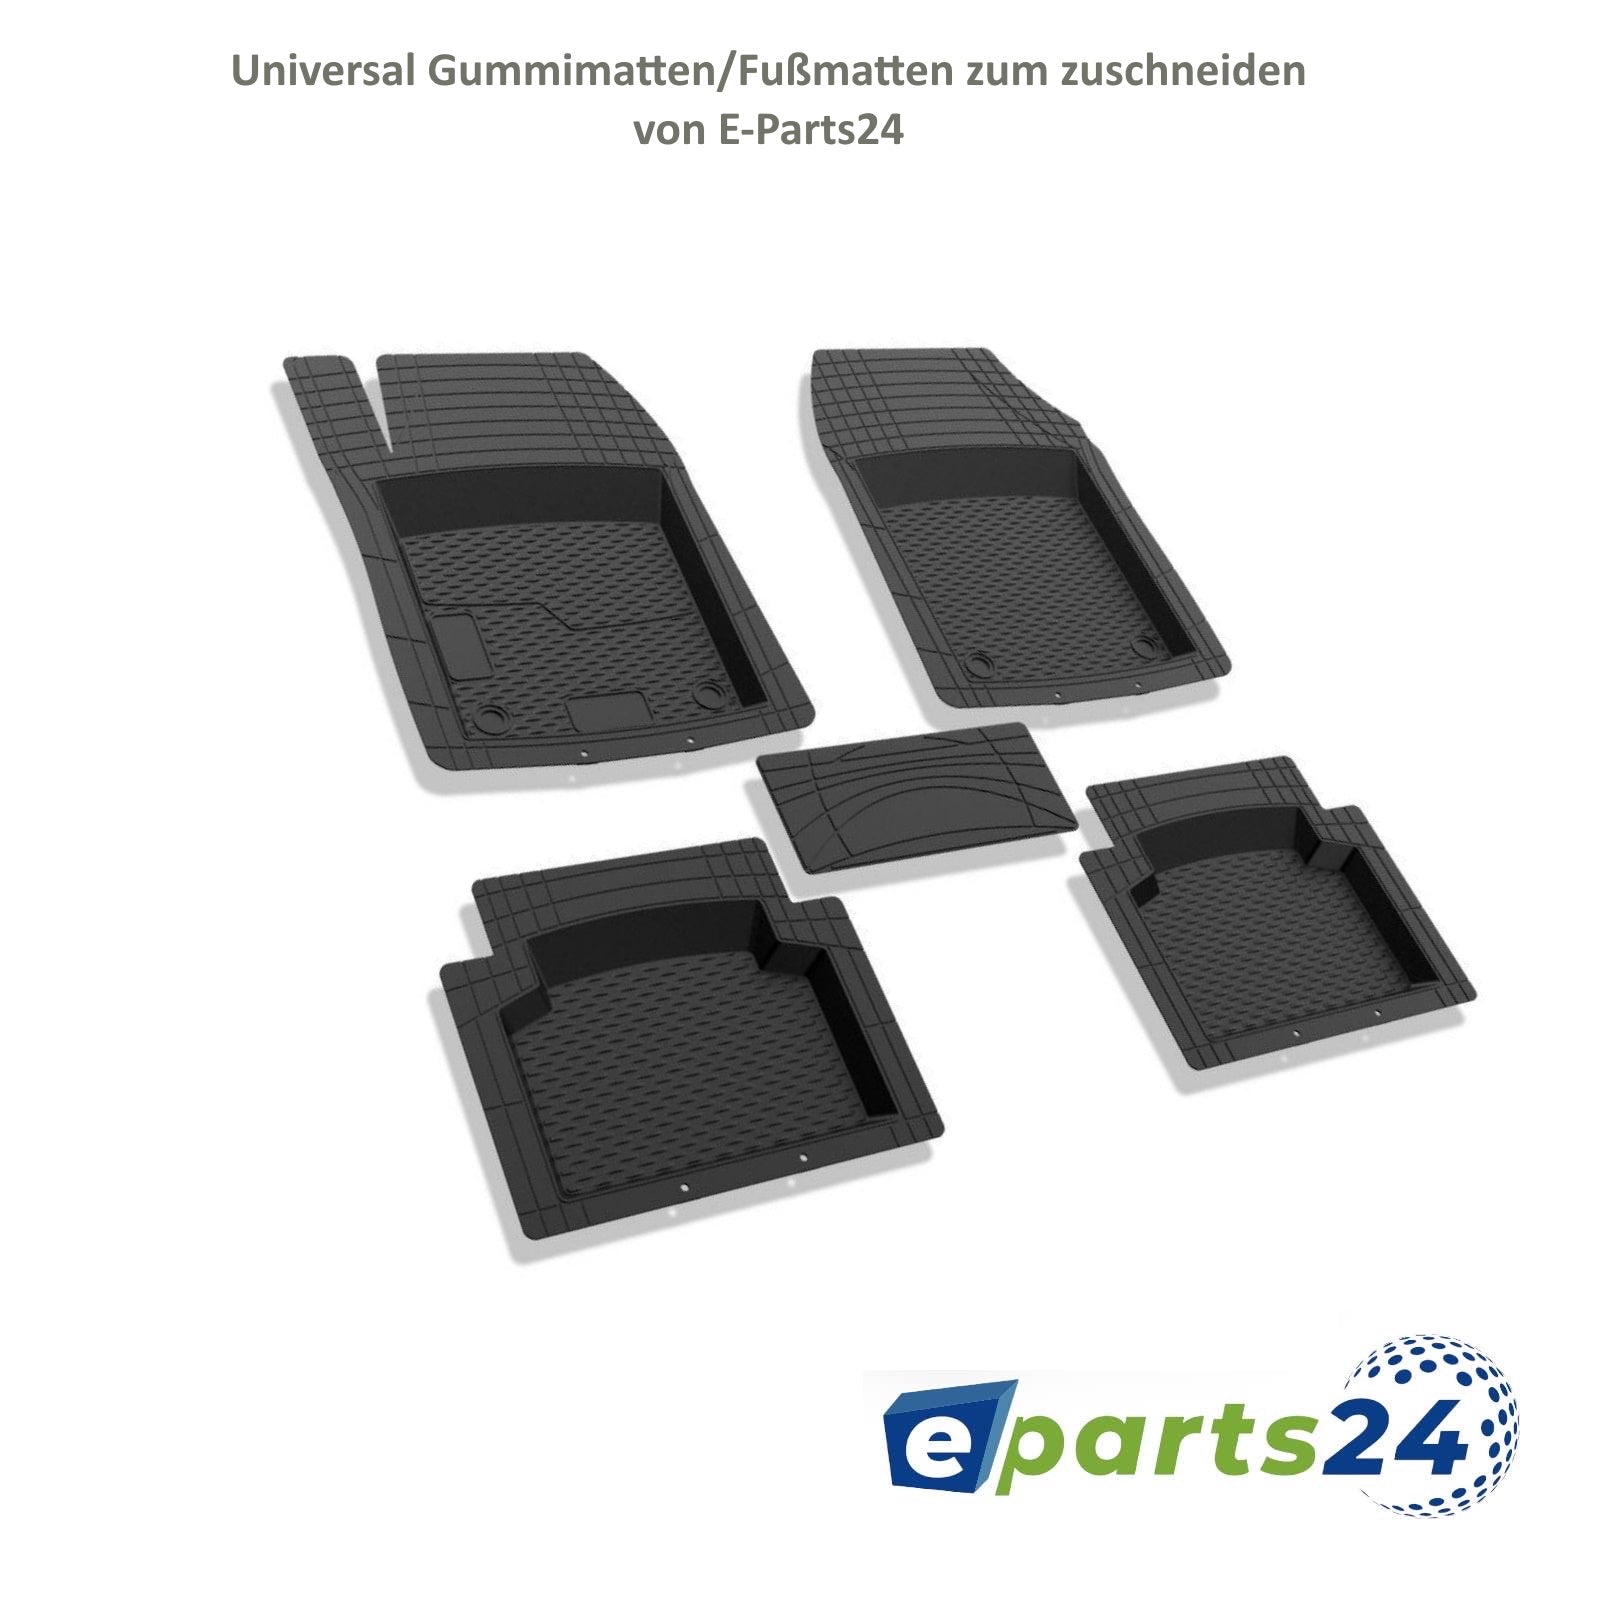 Automatten Fußmatten 3D Gummimatten universal 5 teilig zum zuschneiden –  E-Parts24